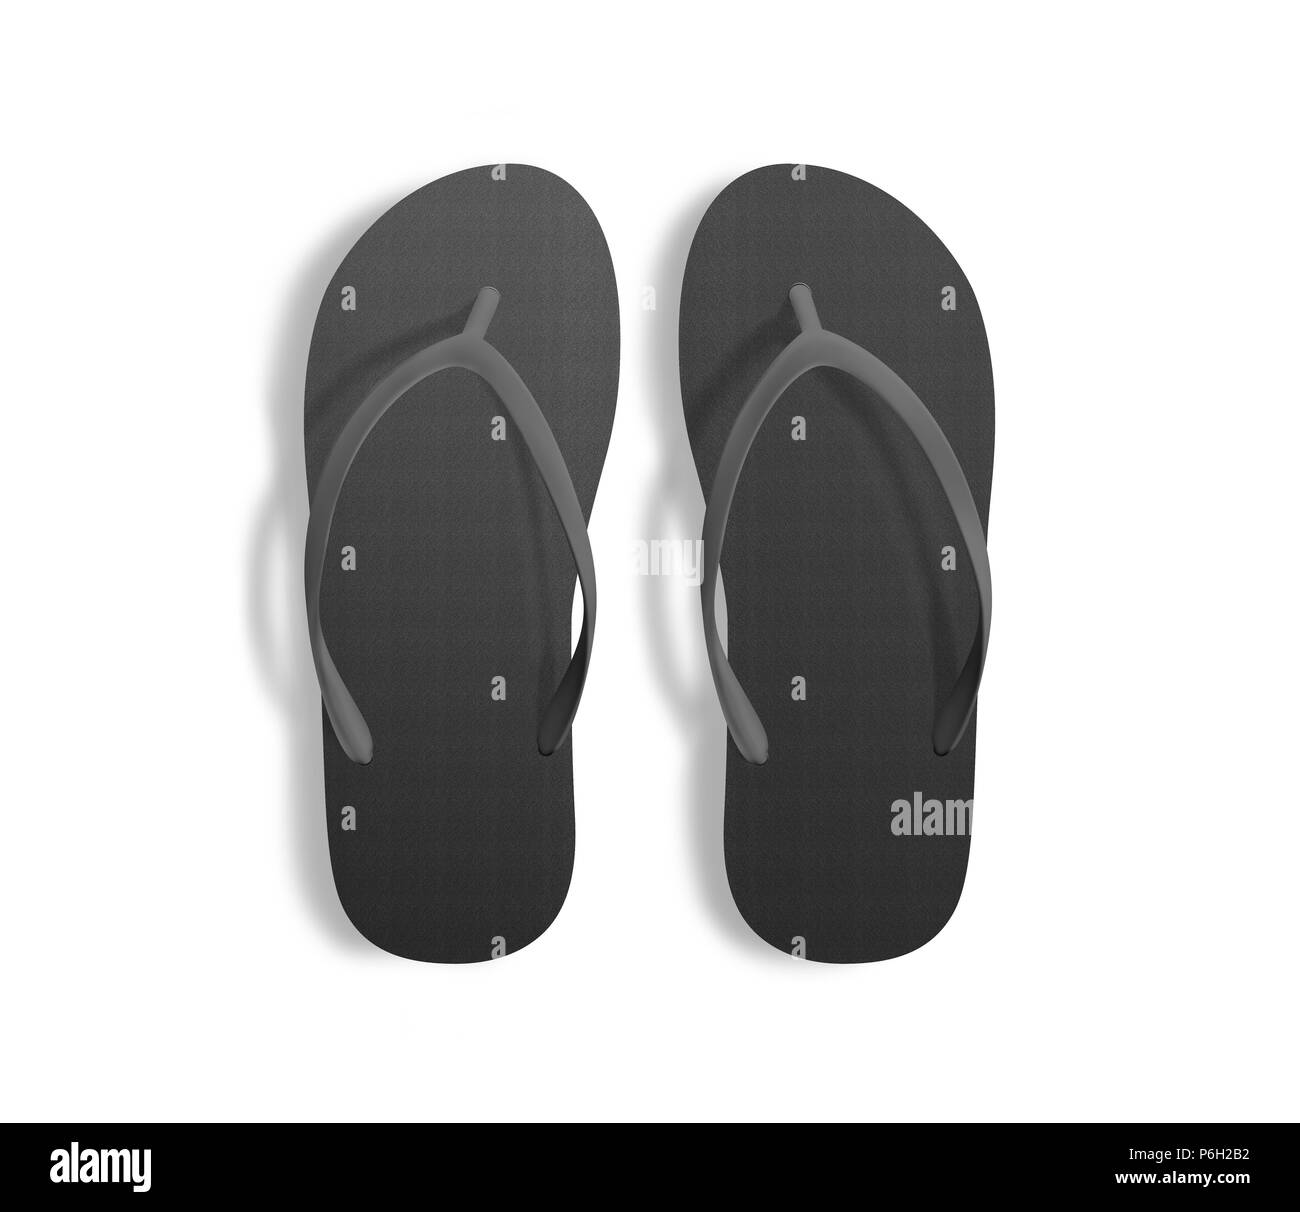 plain black slippers